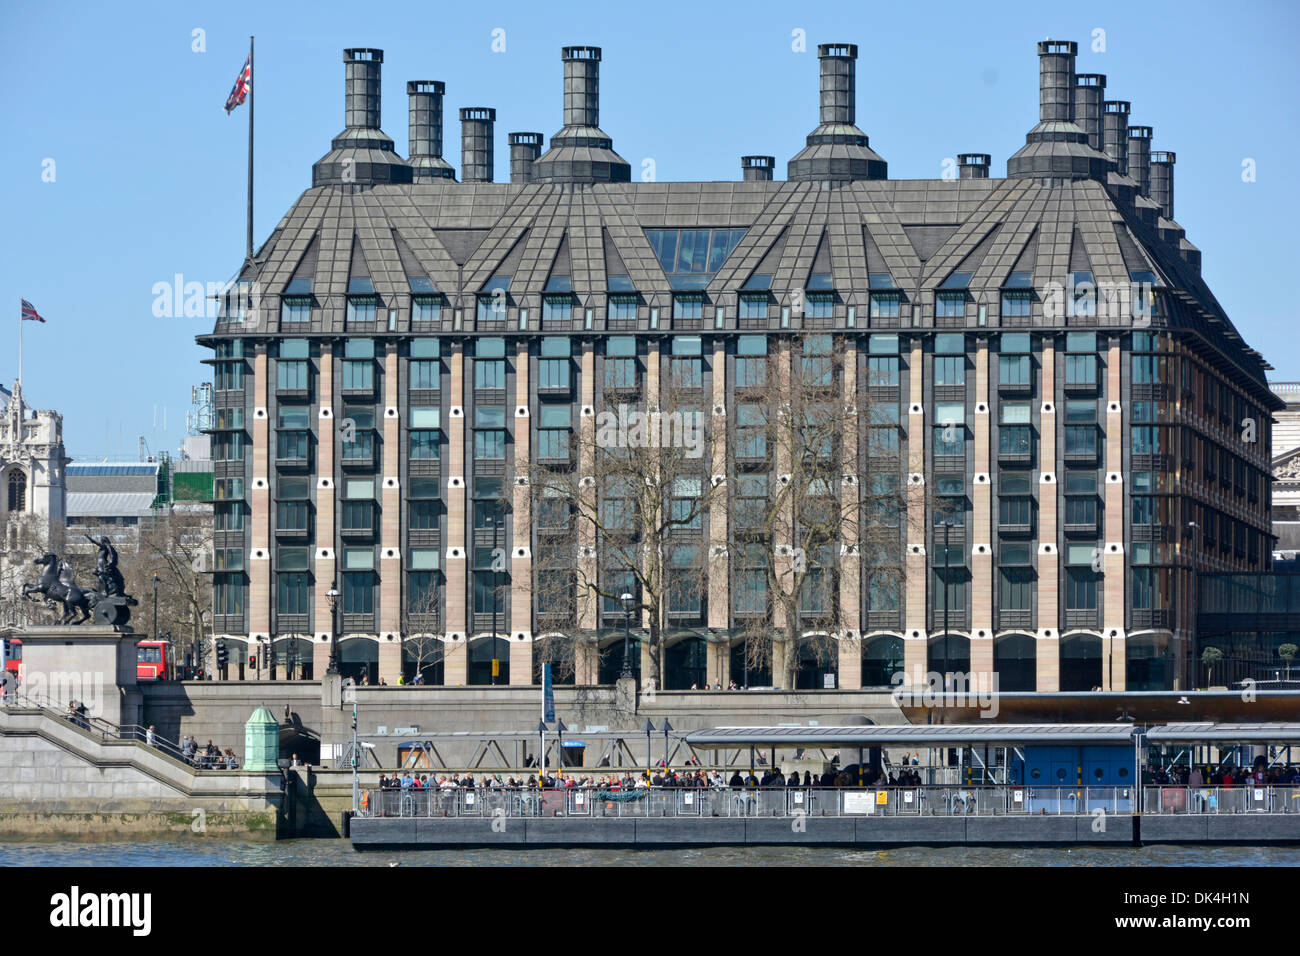 Modernes Portulliushaus Palast von Westminster Parlamentsgebäude für britische Parlamentsmitglieder neben der Themse & Westminster Pier London Großbritannien Stockfoto